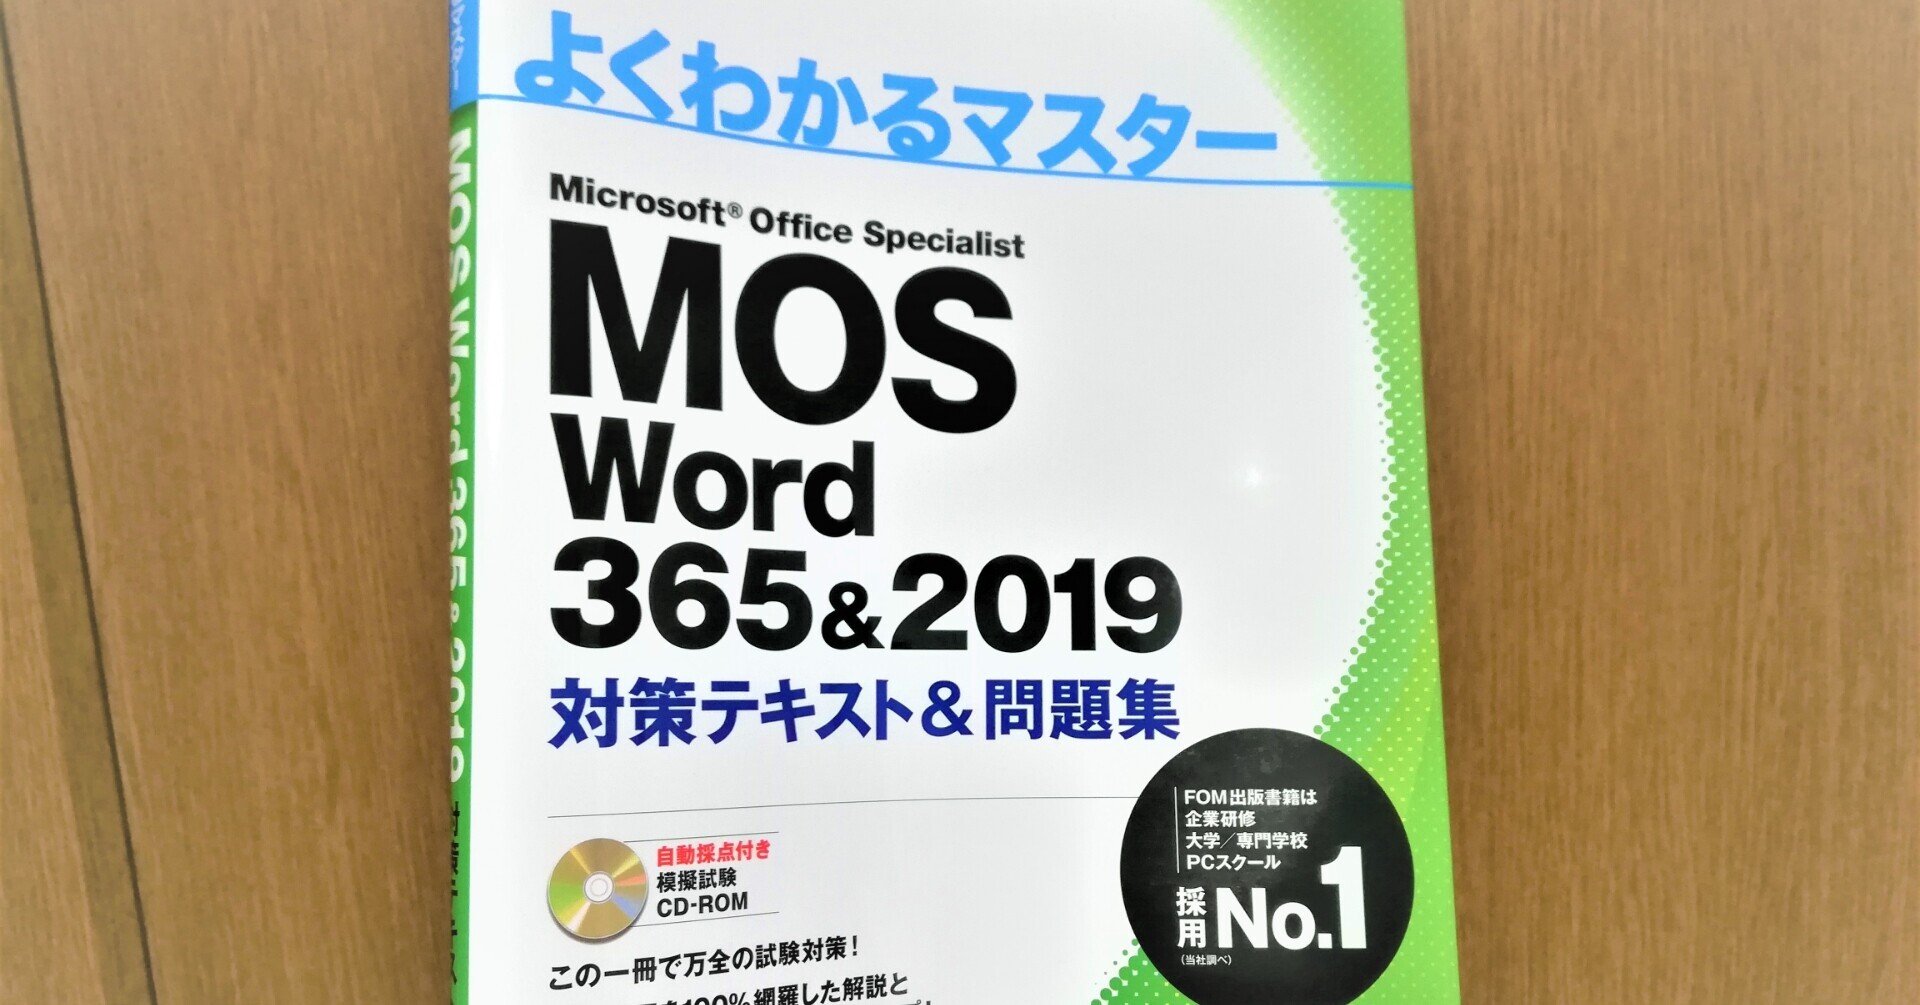 「MOS Word 365&2019」の資格を取ります！ まずは 